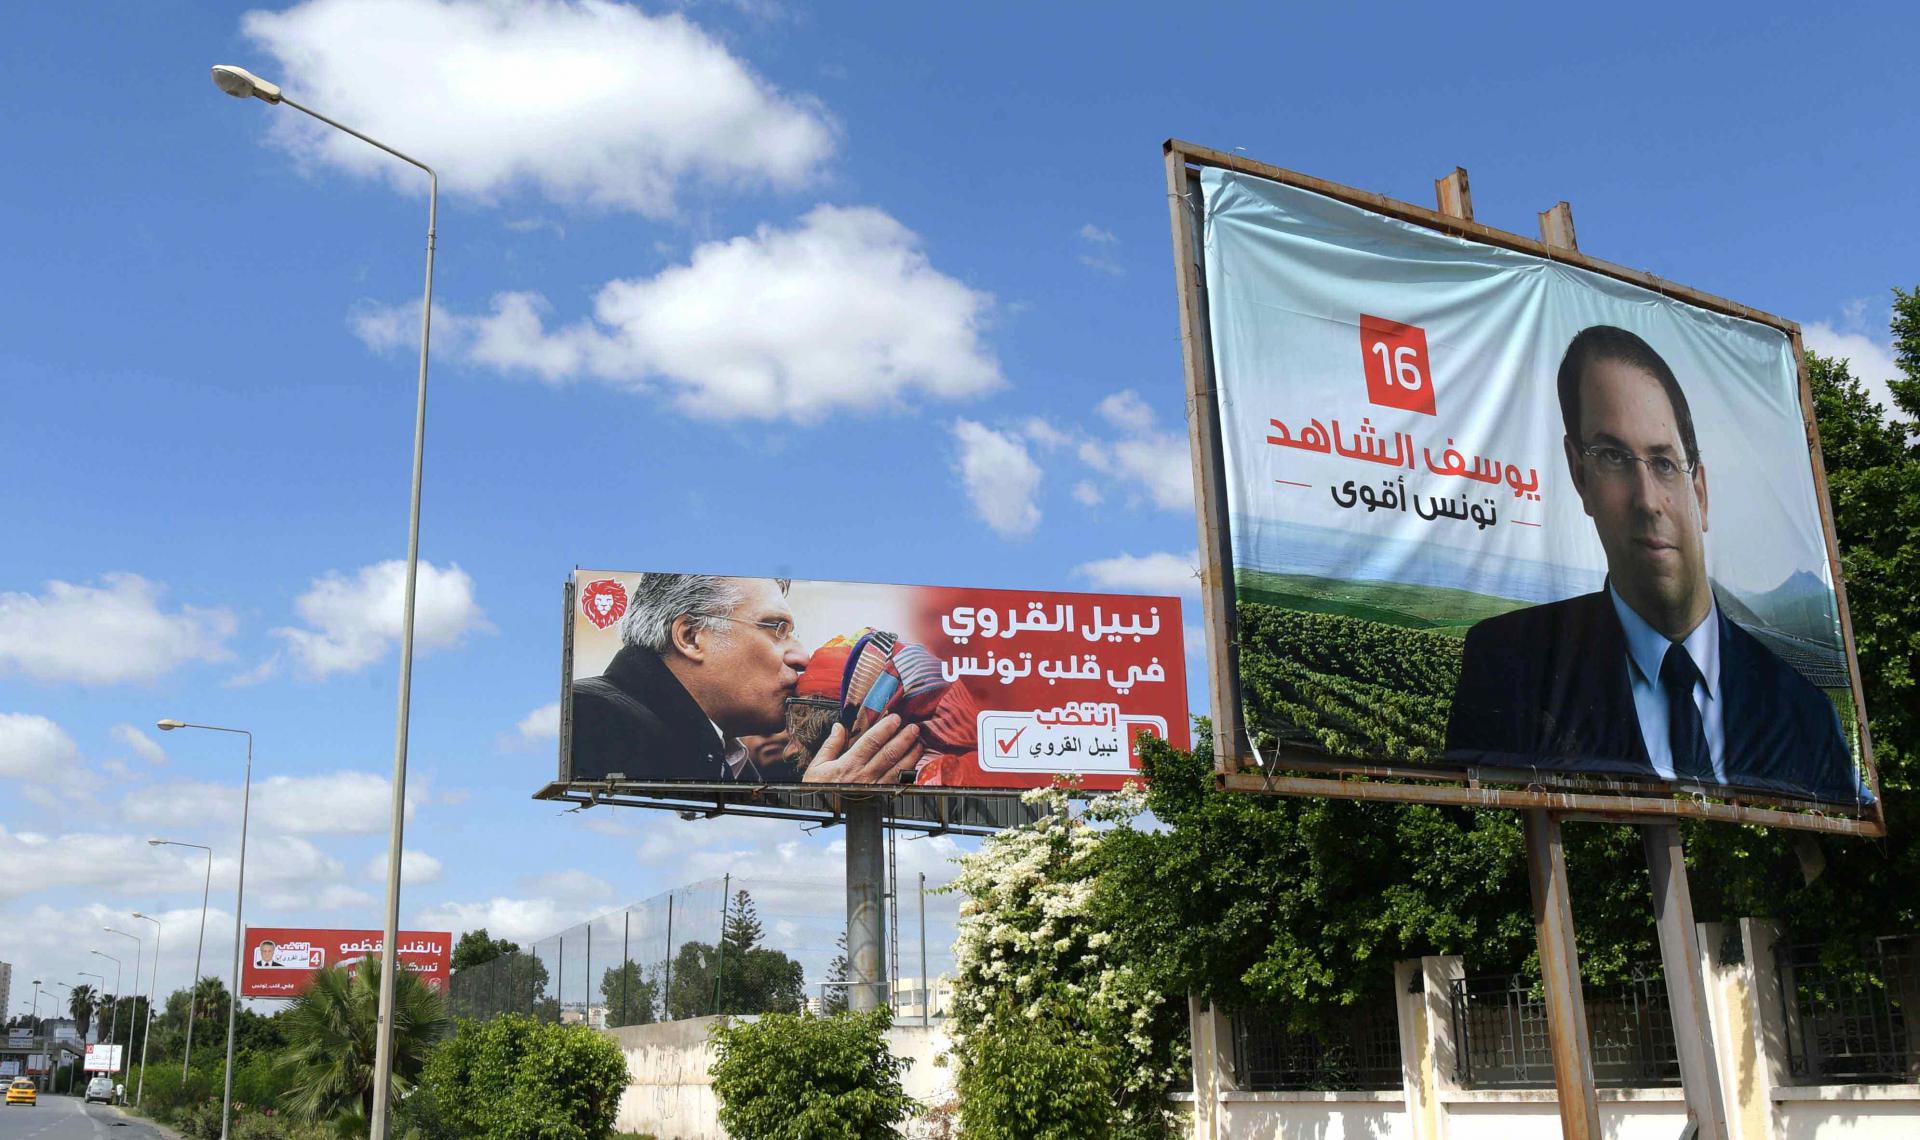 لوبيات سياسية ومالية ودينية تهيمن على المشهد السياسي في تونس